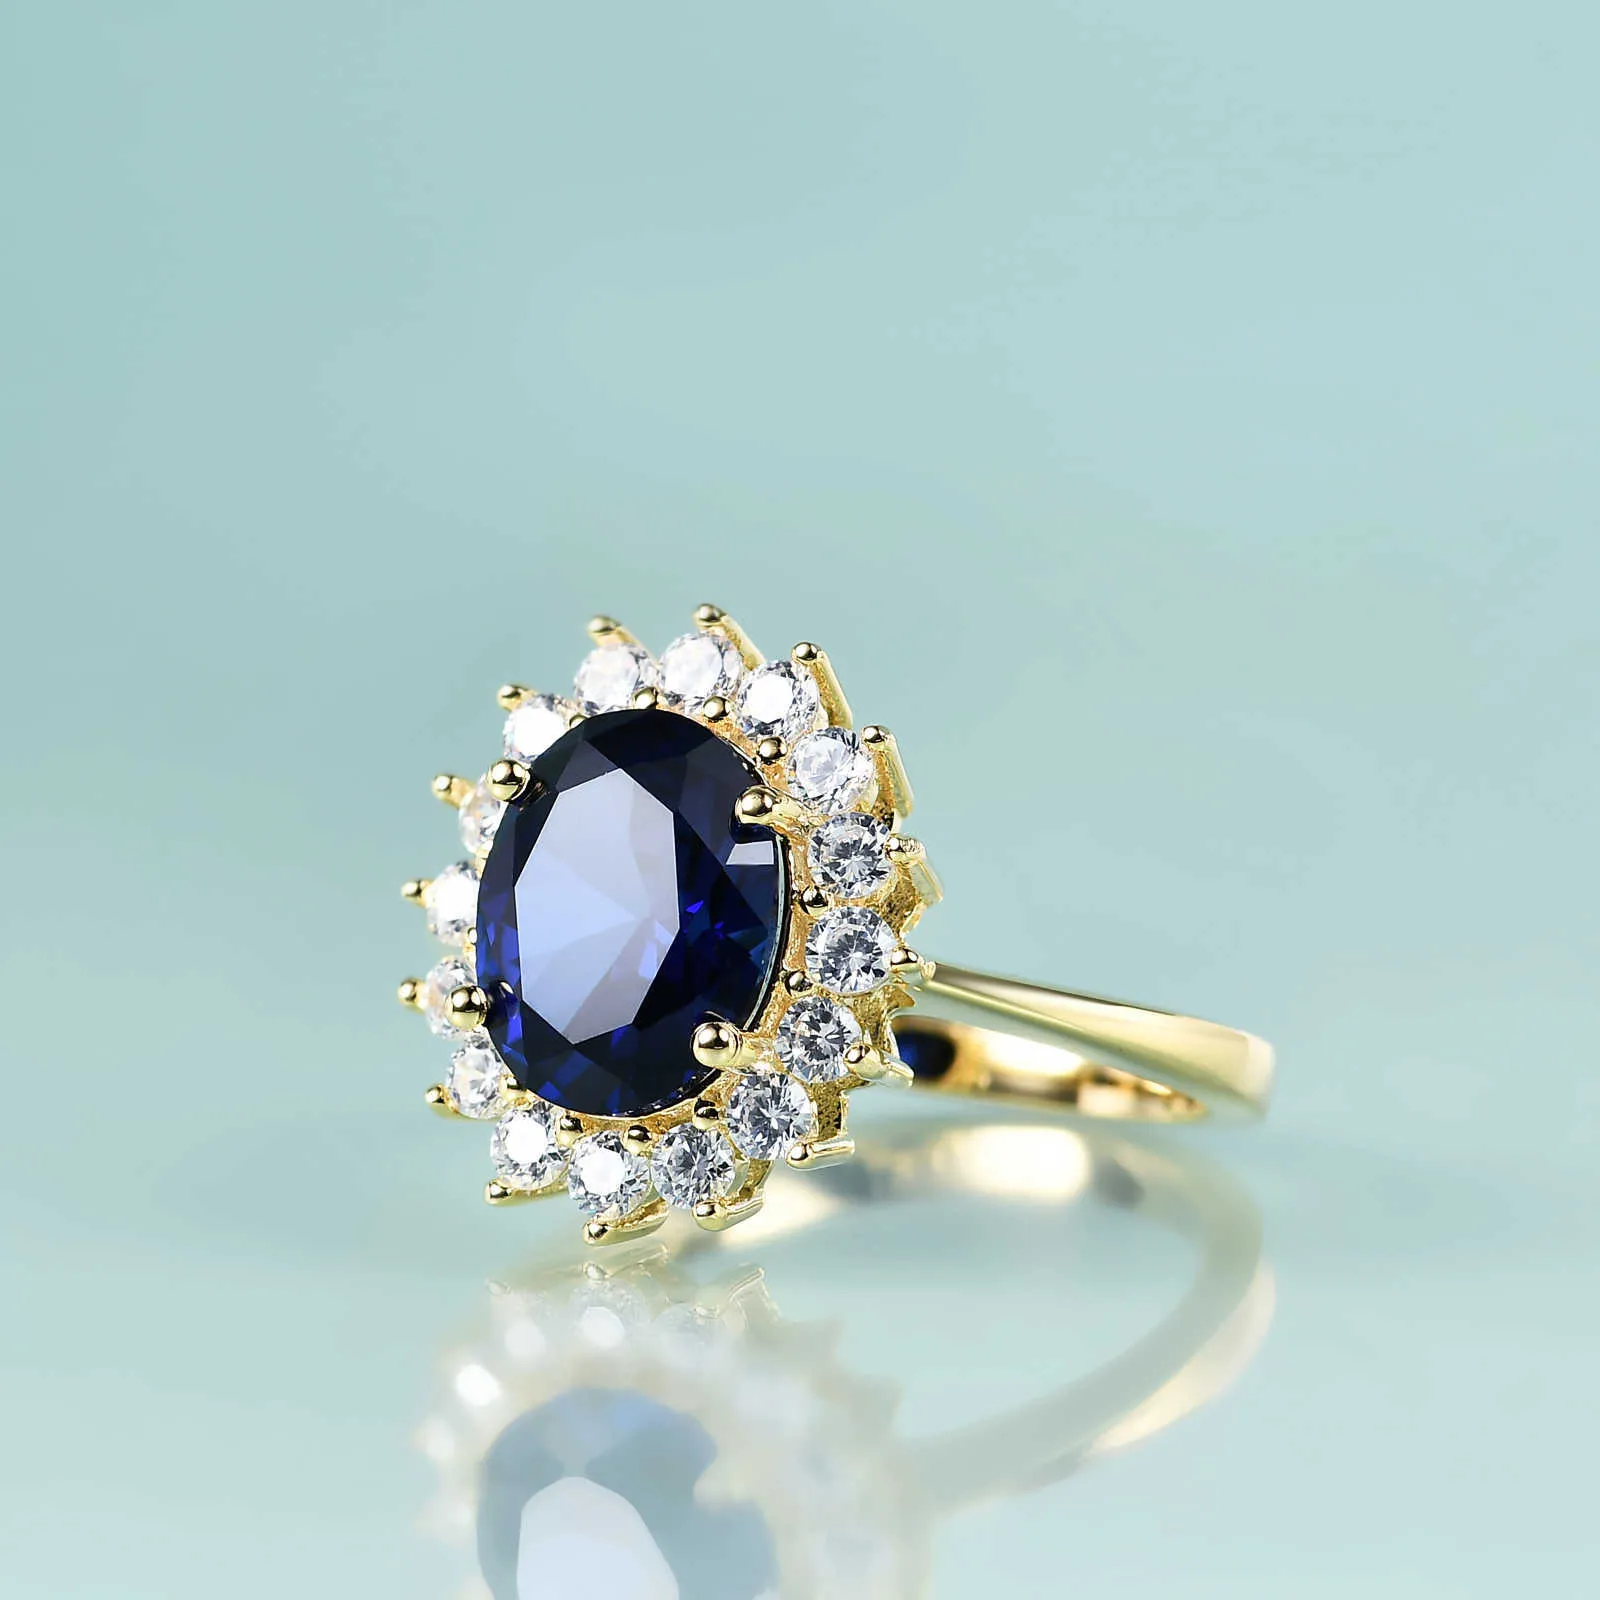 Университетское кольцо кольца принцесса «Красота» Диана Вдохновляем